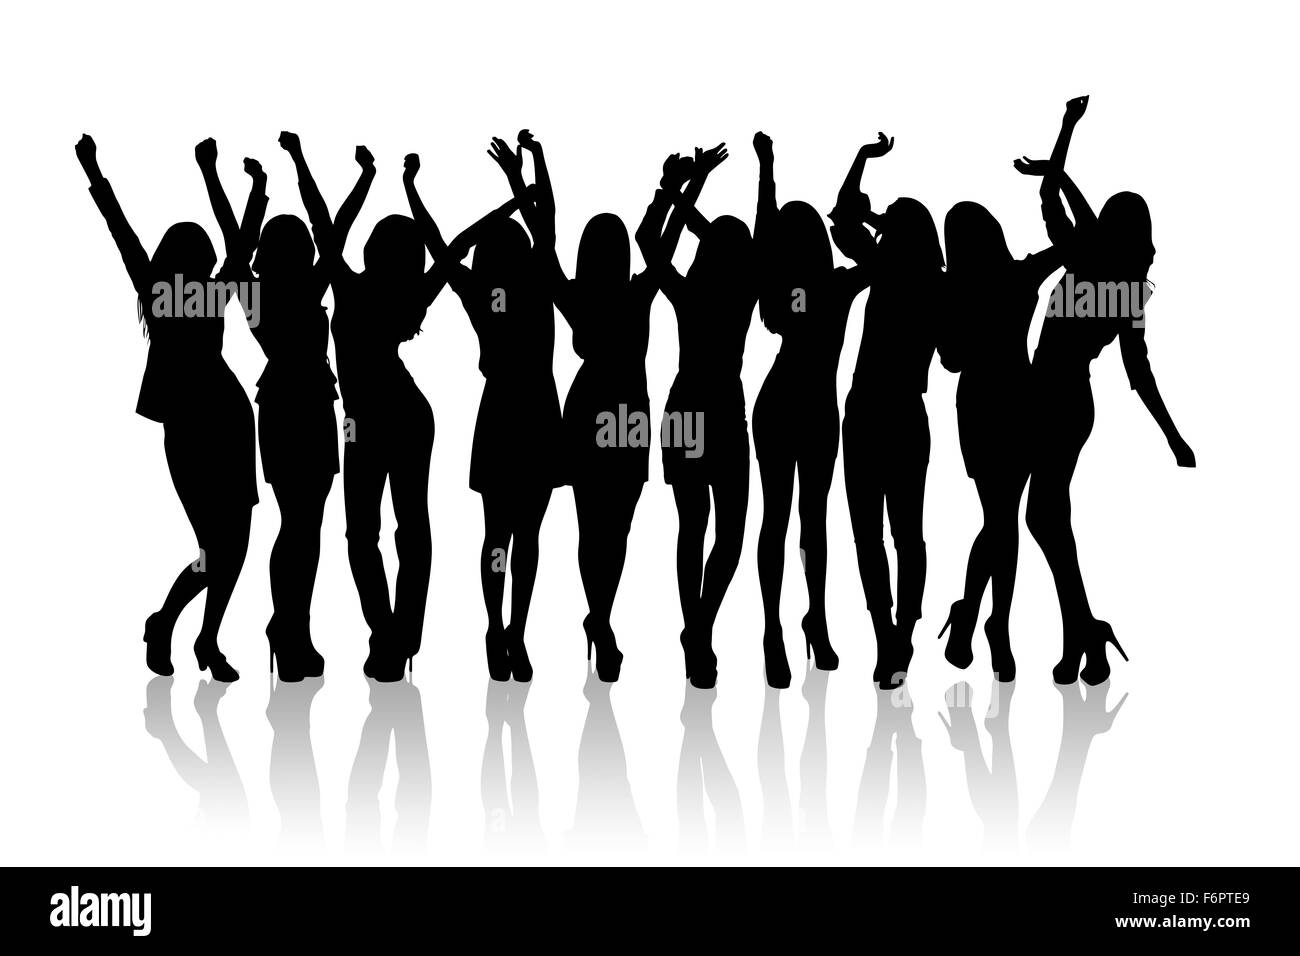 Premium Vector | Girls dancing pose silhouette